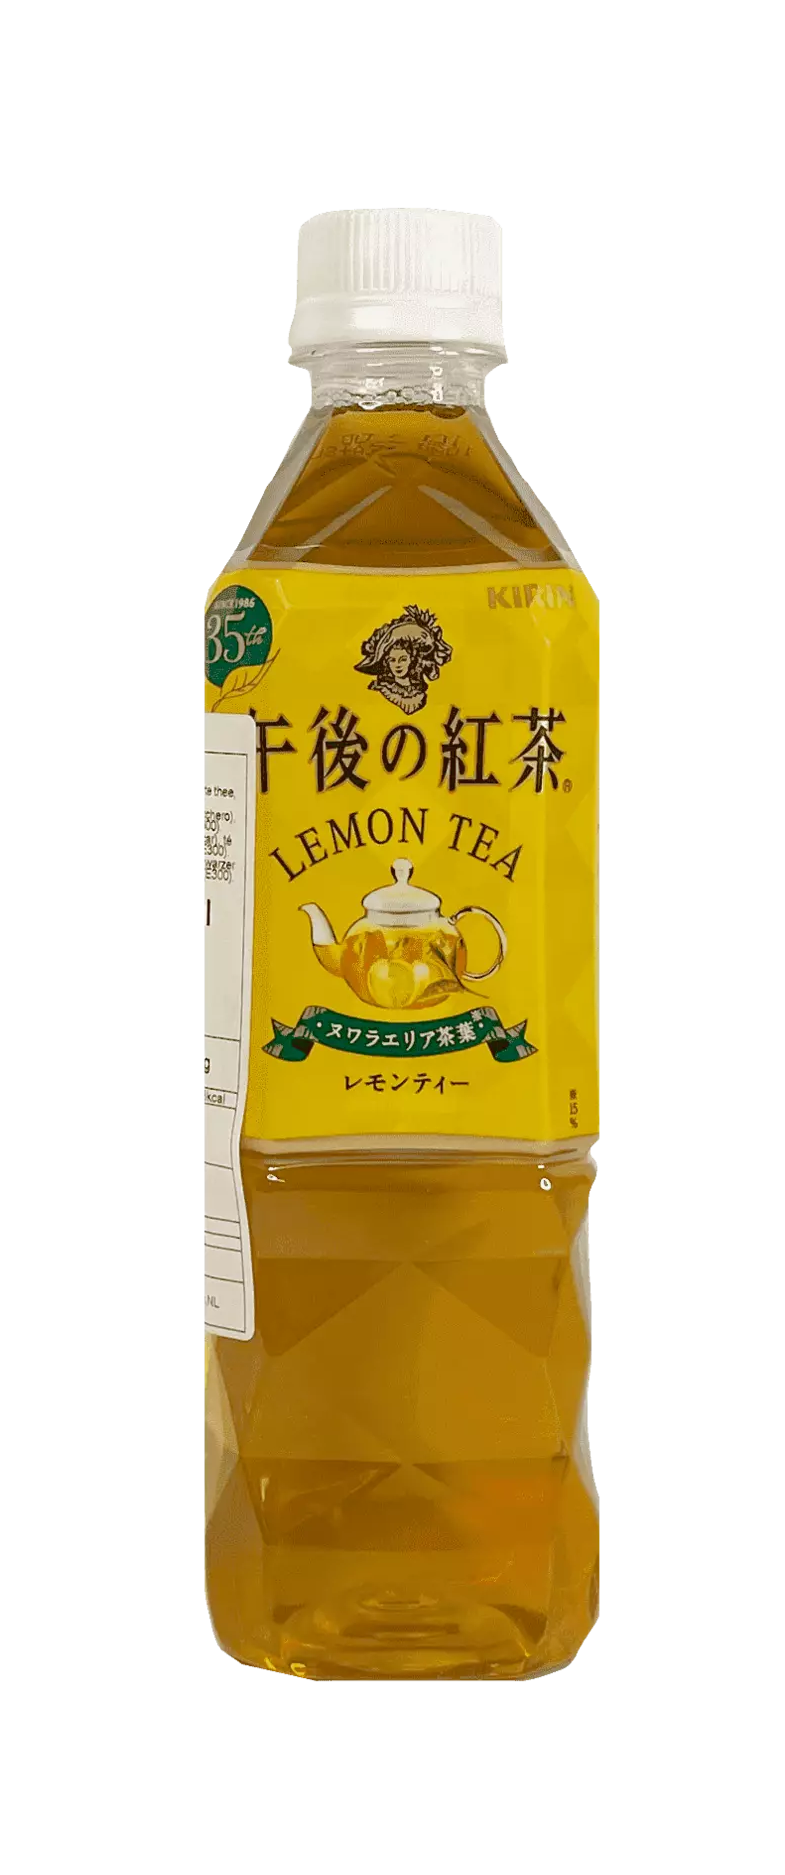 Dryck Afternoon Te Citron 500ml Kirin Japan